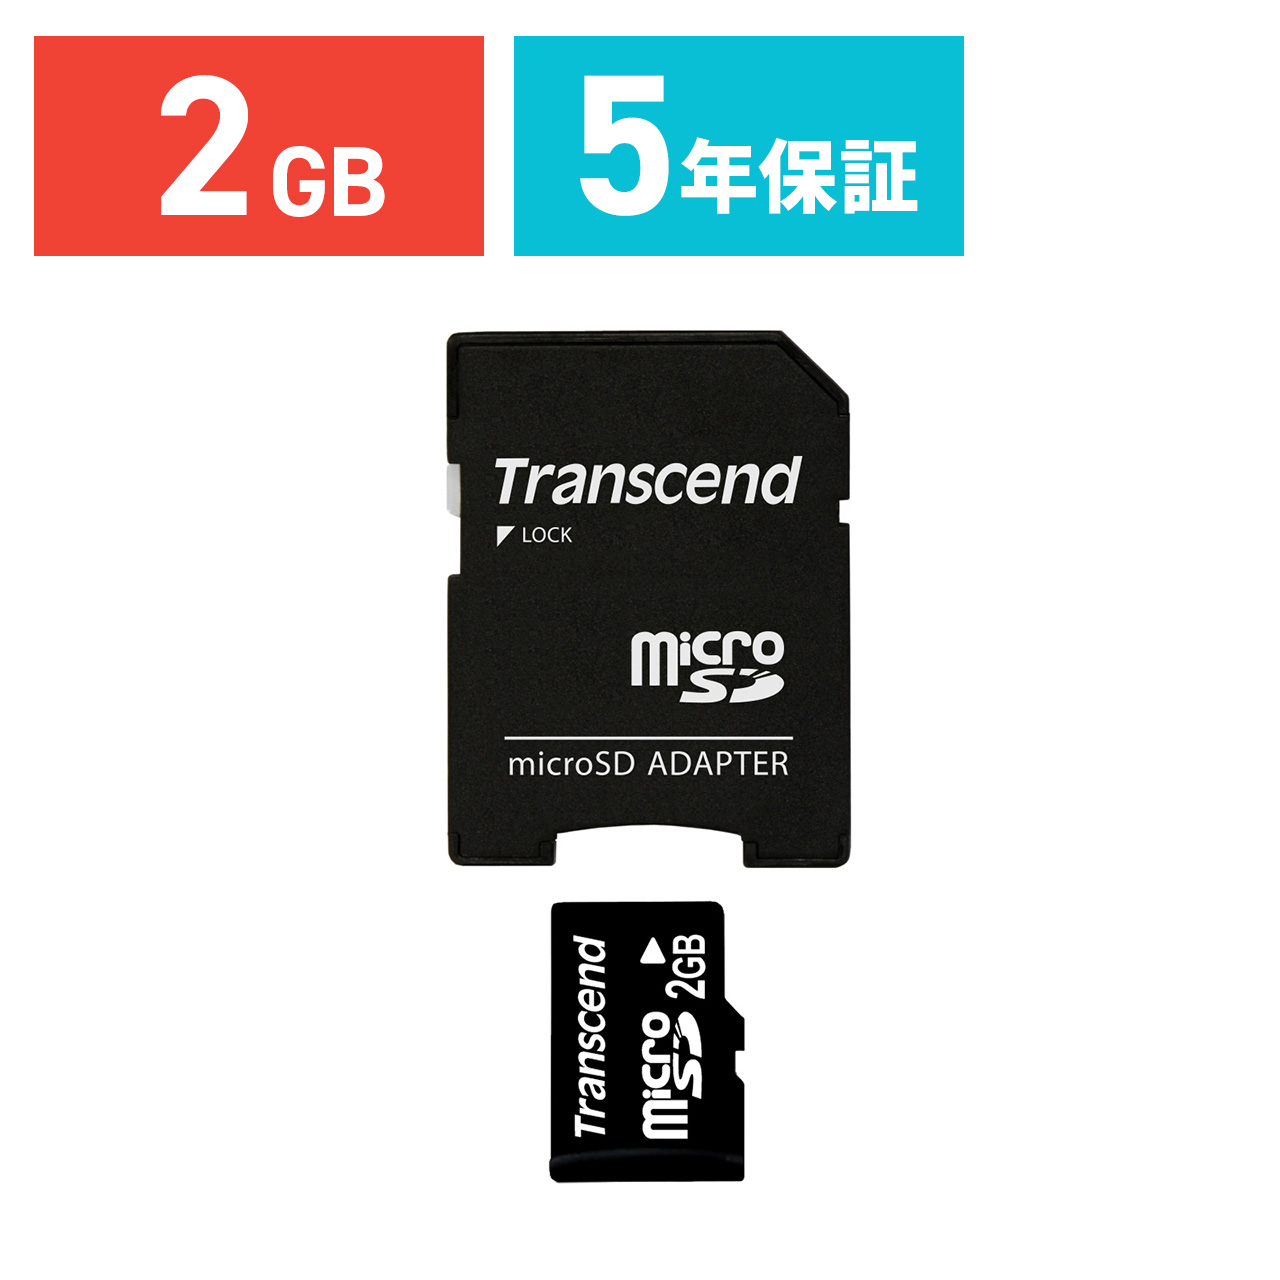 Микро память для видеорегистратора. Флешка для карты памяти микро СД. Карта памяти Transcend ts1gusd-2. SD Card 2gb. SD карта MICROSD.